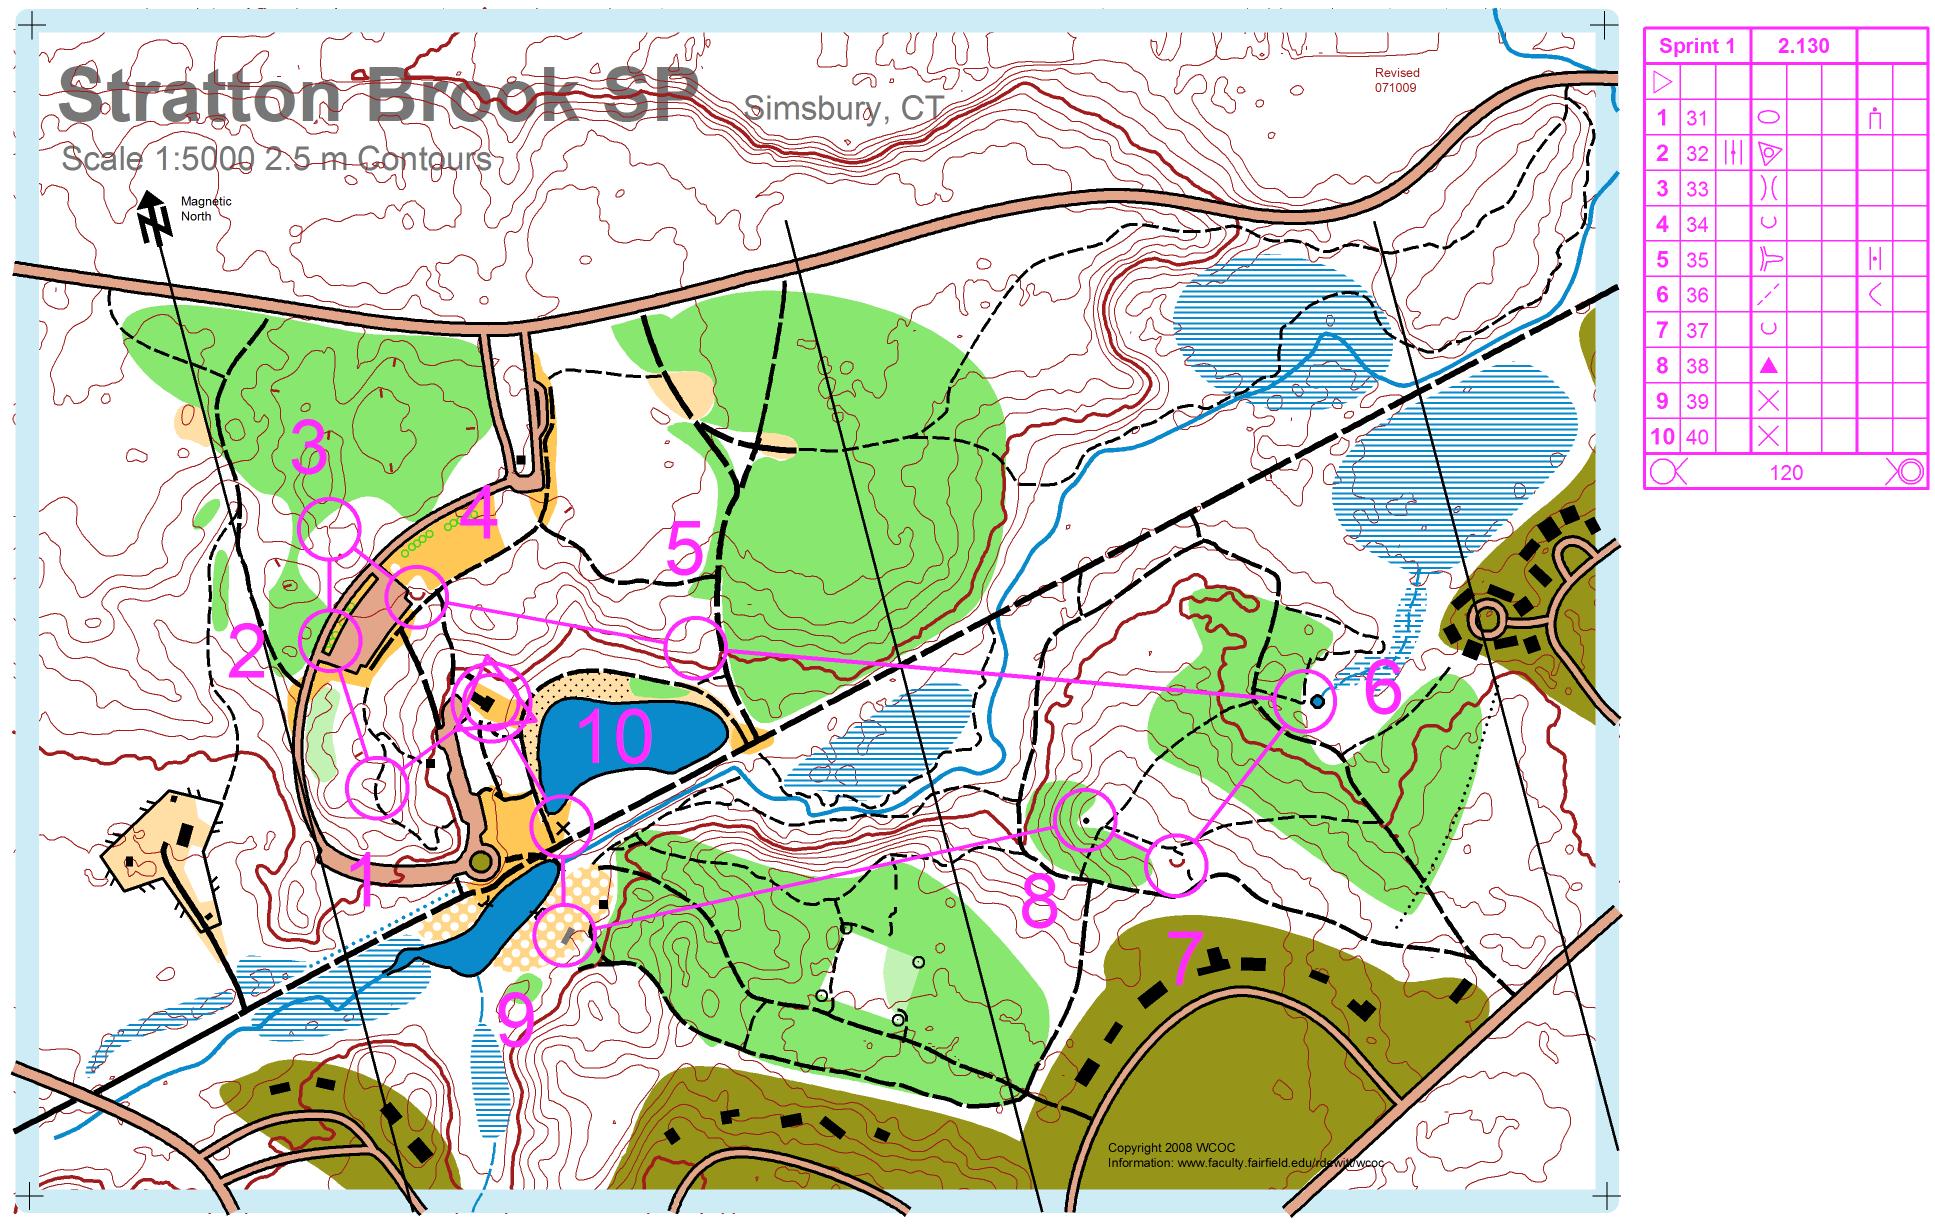 Stratton Brook Sprint 1 (16-09-2009)